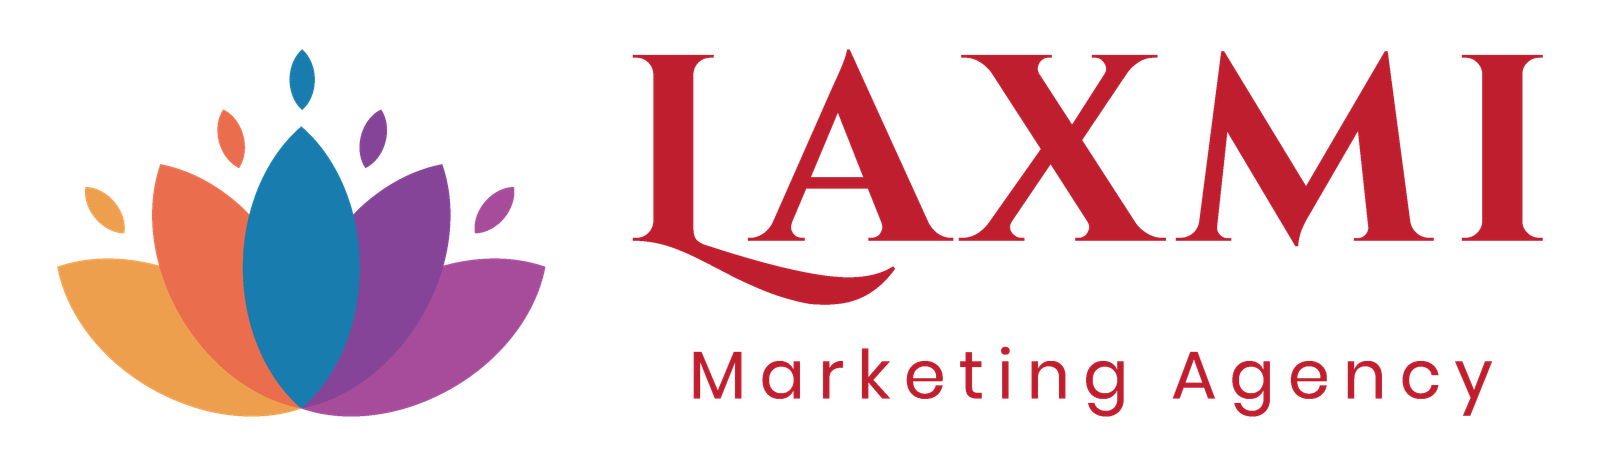 Laxmi Marketing Agency final logo-2